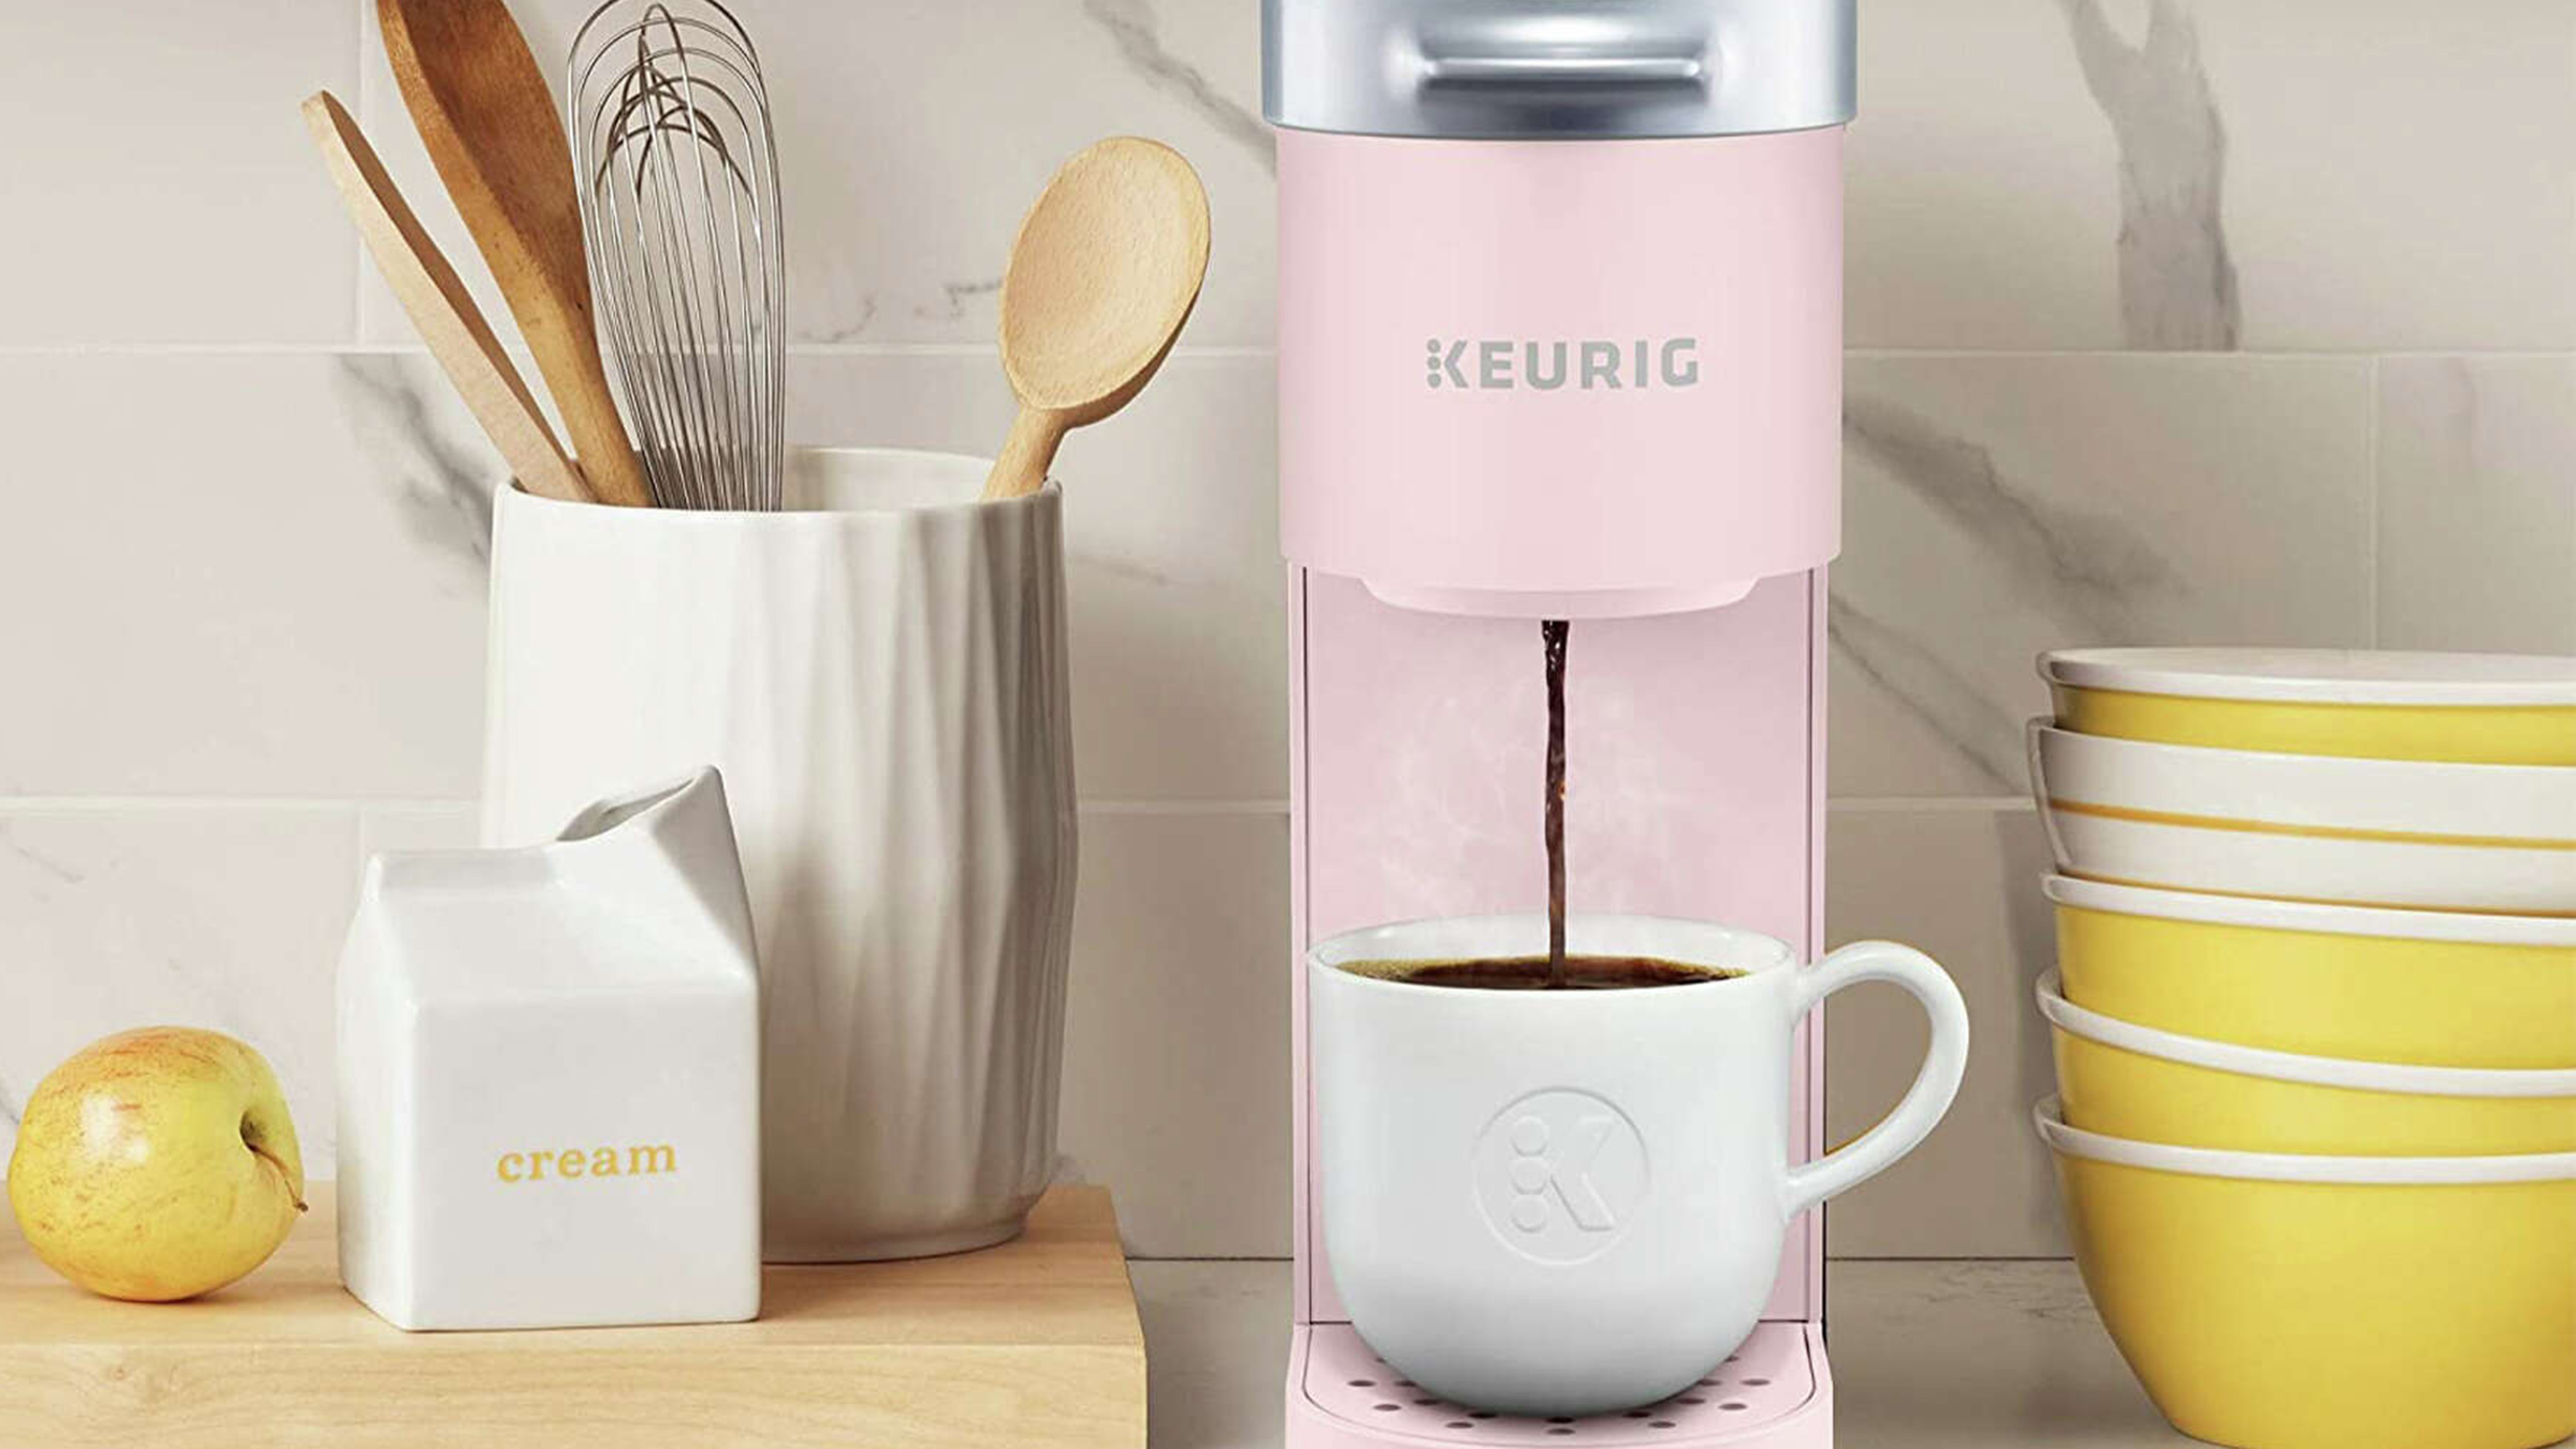 Keurig K-Slim Single-Serve K-Cup Coffee Maker, Black and Keurig Standalone  Milk Frother, Black